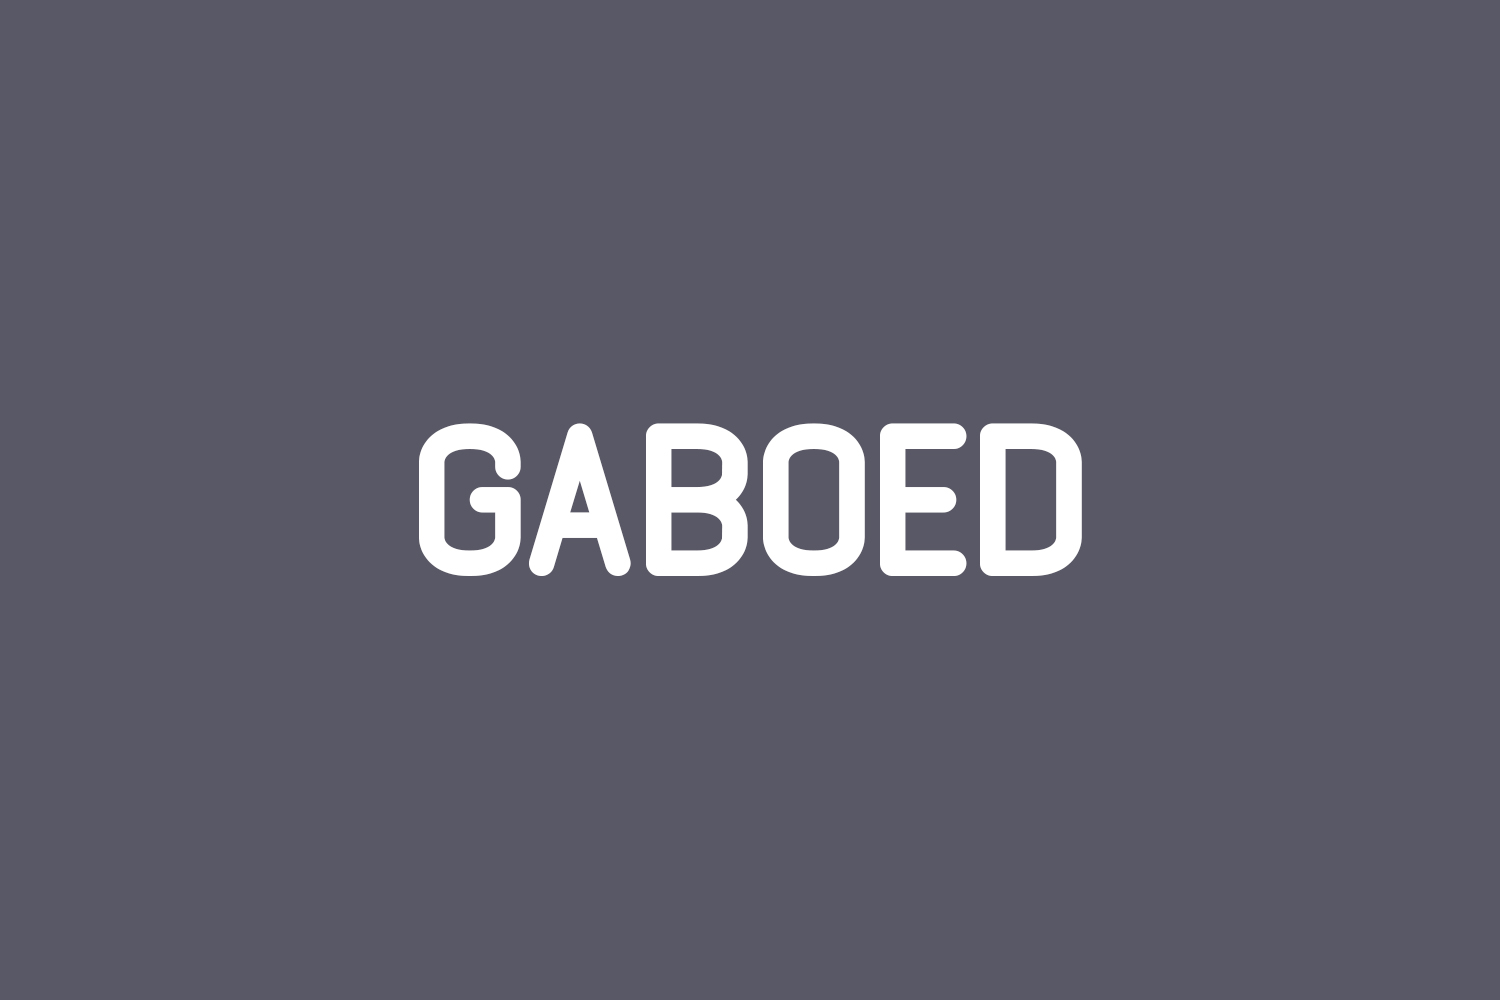 Gaboed Free Font